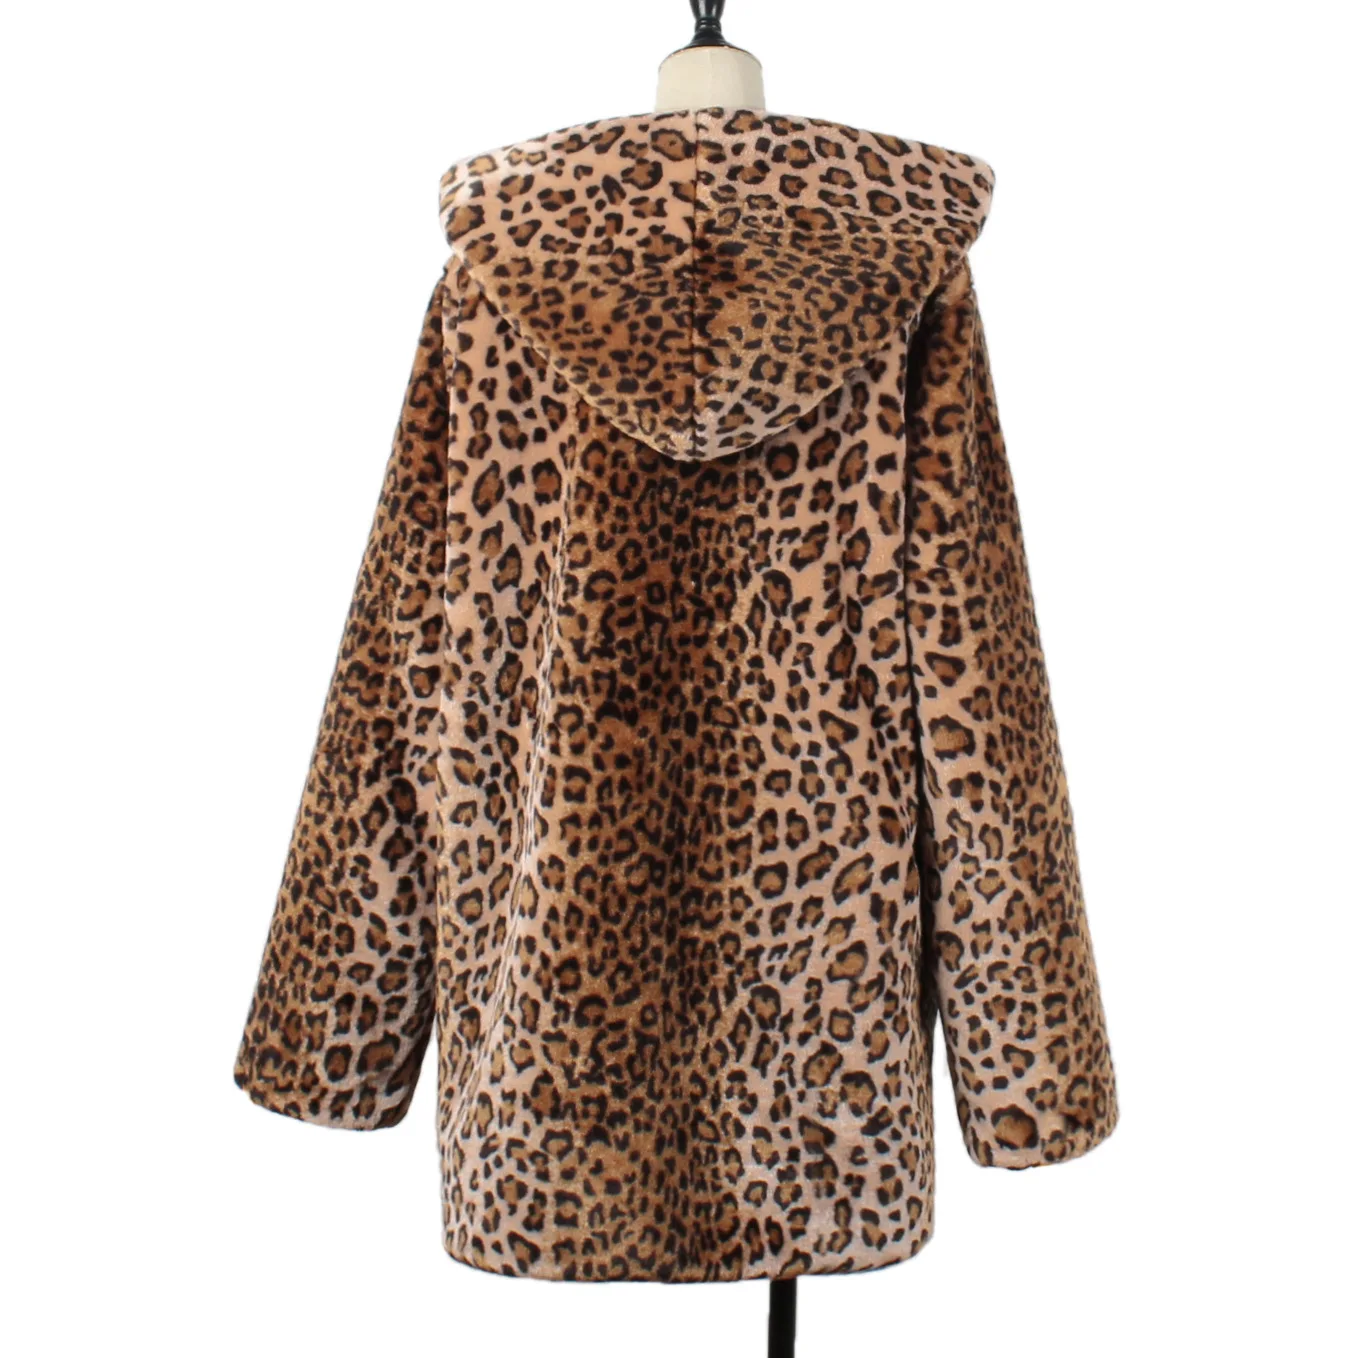 Горячая распродажа Новые горячие женские зимние леопардовые пушистые флисовые куртки пальто кардиганы с капюшоном джемпер Топы Клубная одежда